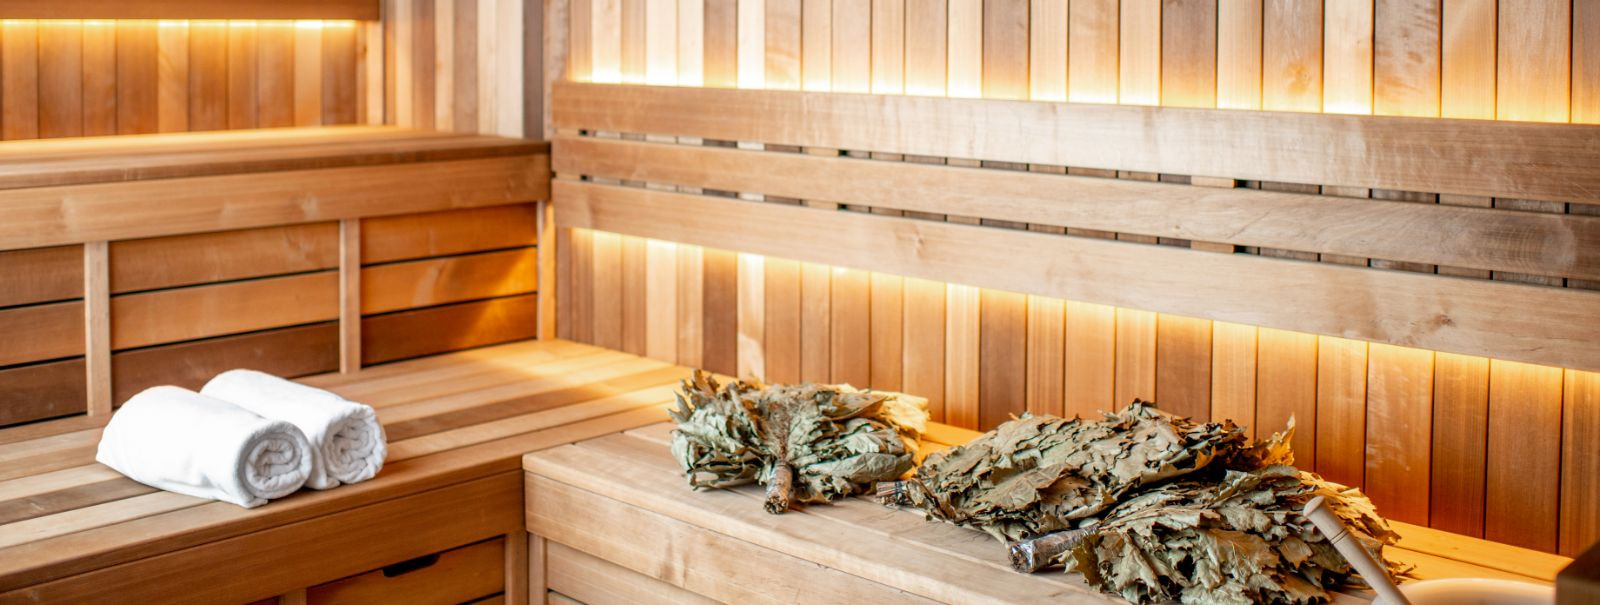 Sajandeid on saunad olnud heaolu ja sotsiaalse kultuuri nurgakivi, eriti Põhjamaades. Traditsiooniline saunakogemus, mis on sügavalt juurdunud rituaalidesse ja